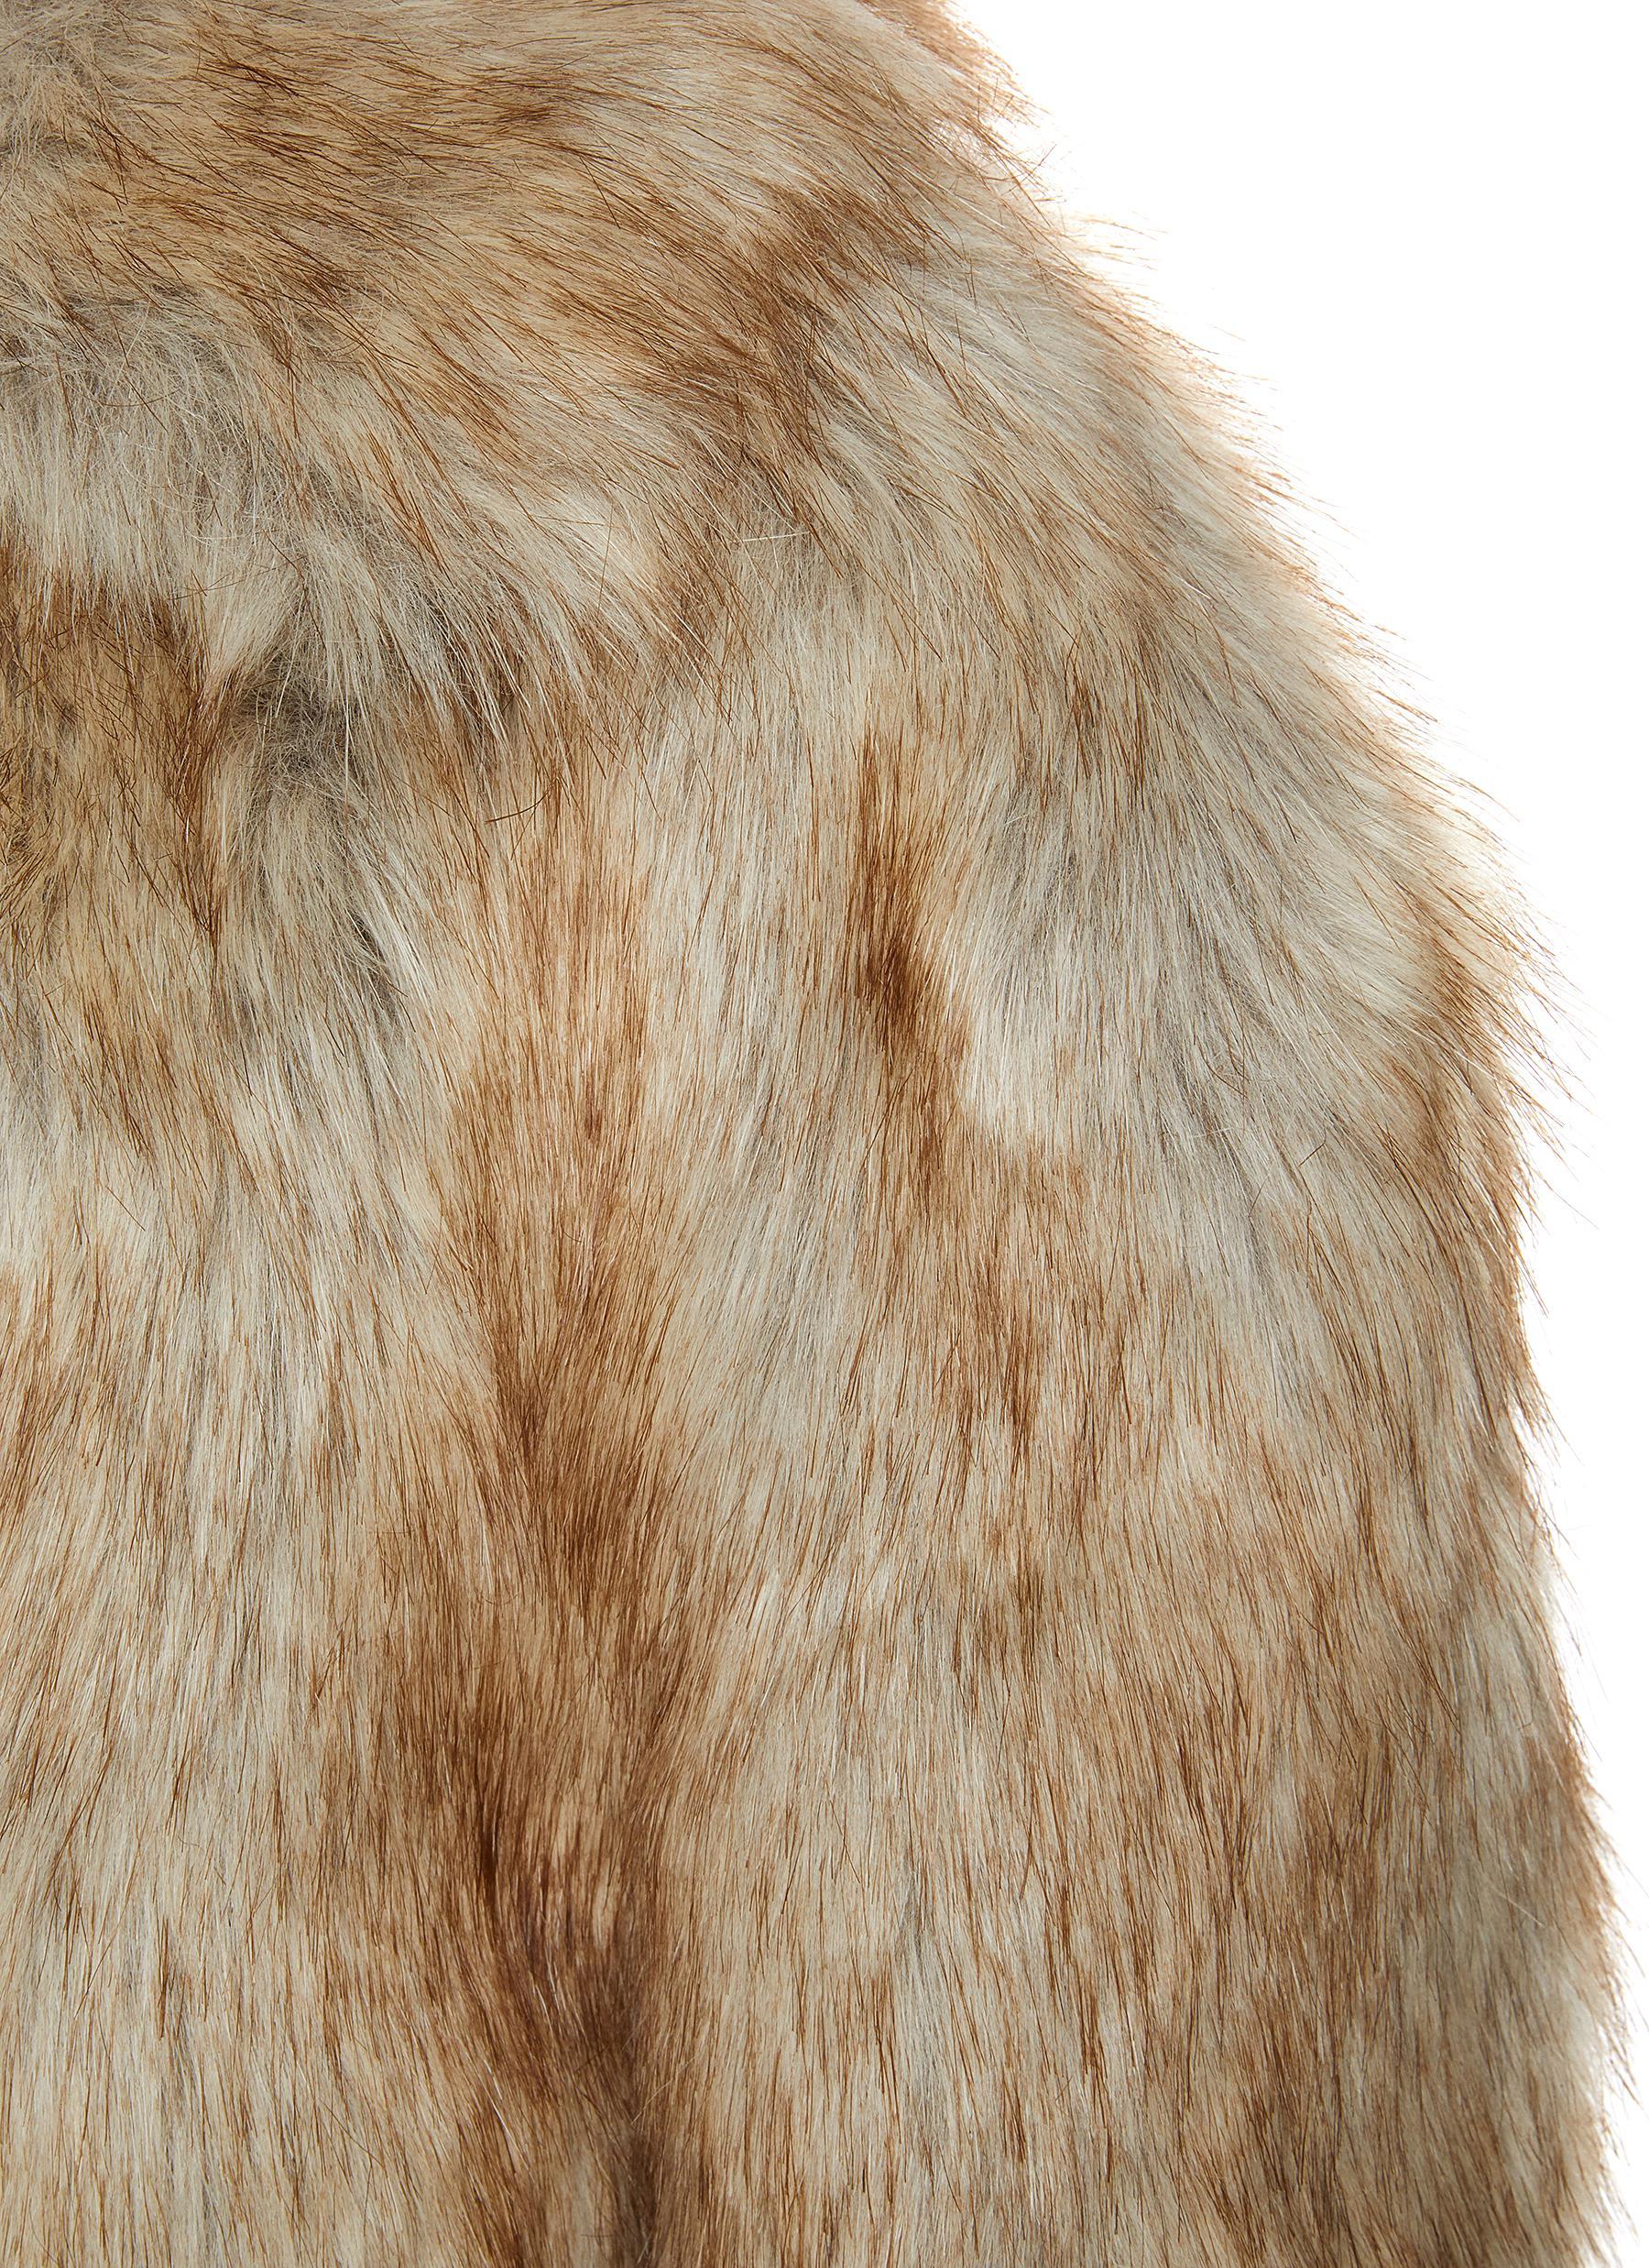 Neutral Short Faux Fur Coat, WHISTLES